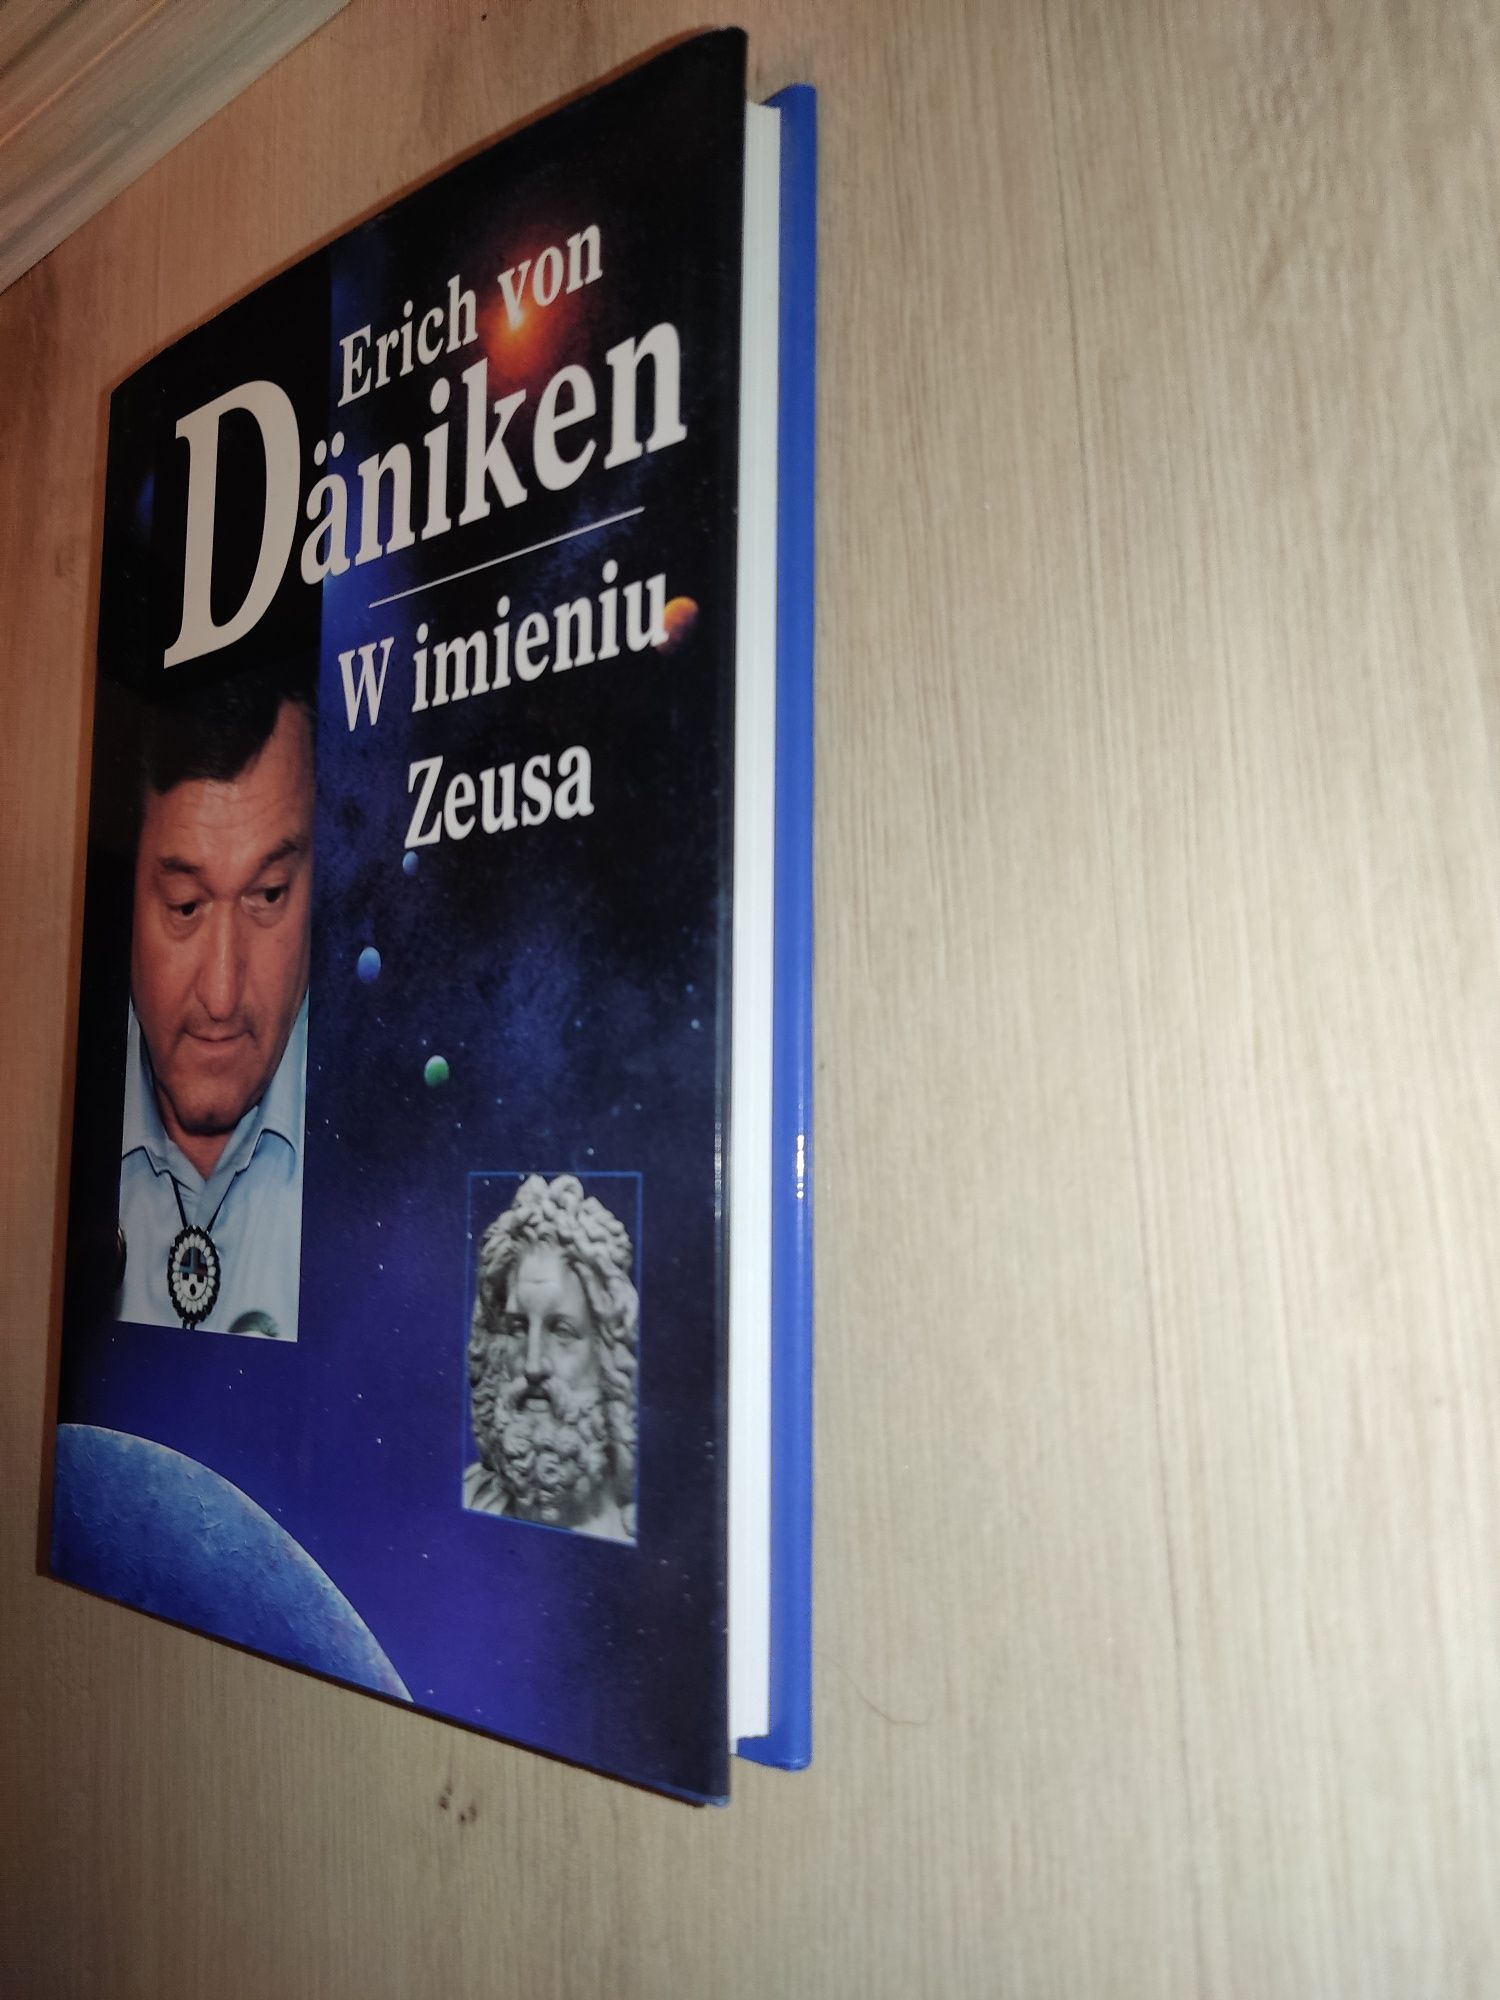 Zestaw 9 książek Erich von Daniken